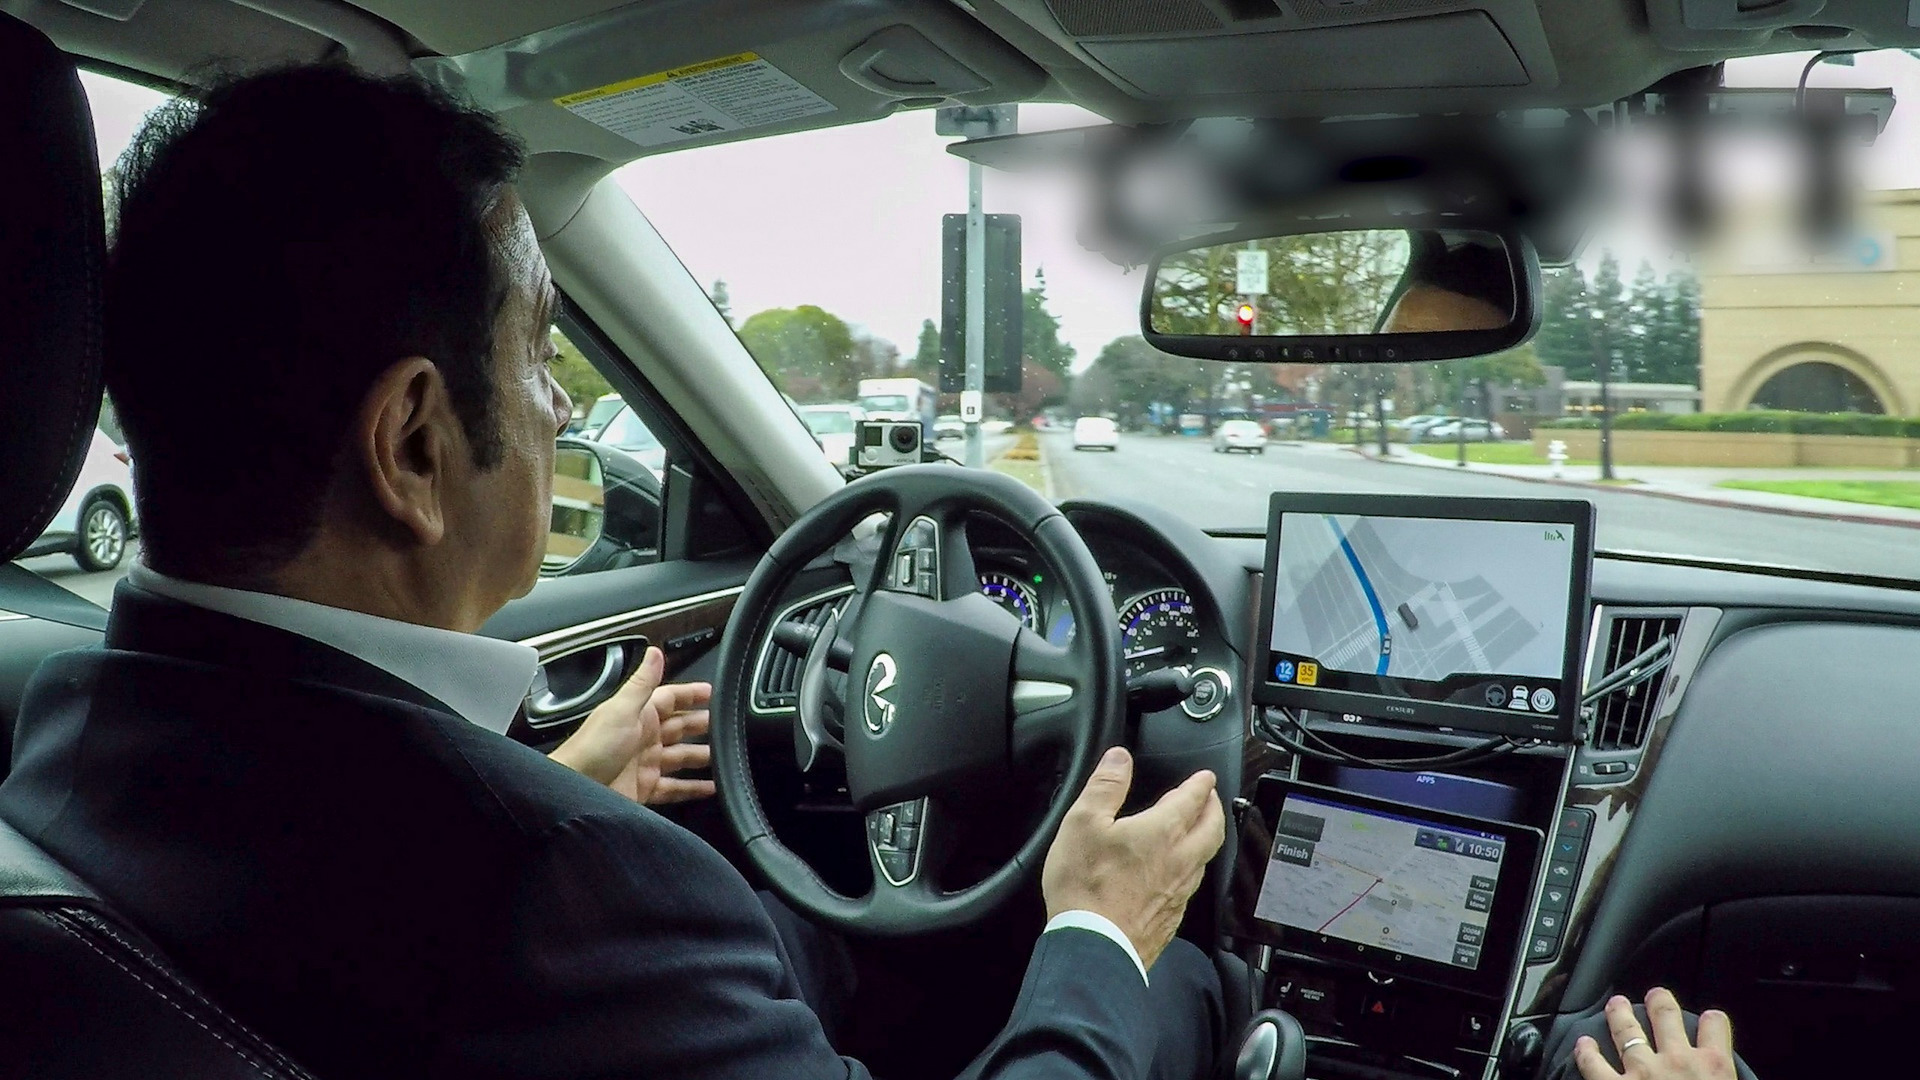 “كارلوس غصن” رئيس نيسان التنفيذي لديه تفاؤل حذر اتجاه المركبات ذاتية القيادة Nissan